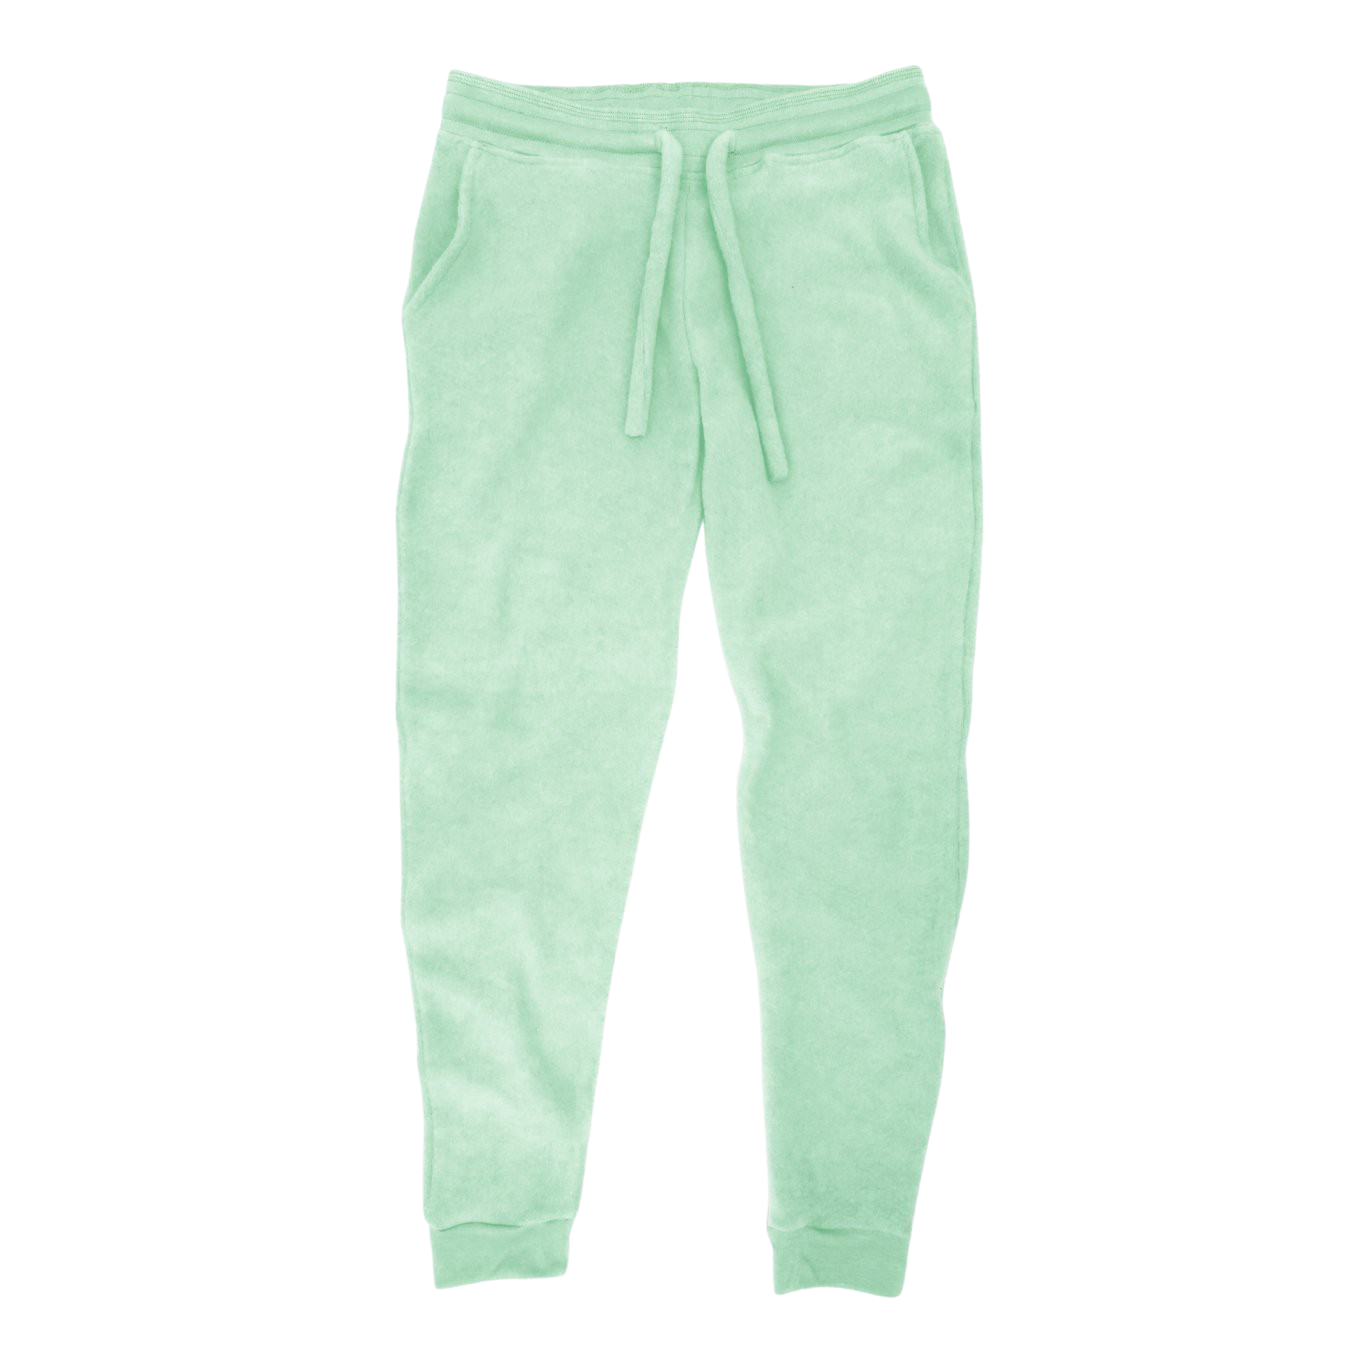 SEVEGO Men's Lightweight Cotton Joggers with Zipper Pockets | 3 Inseam  Lengths | Soft Fabric | Comfort Waistband | Versatile Sports Pants